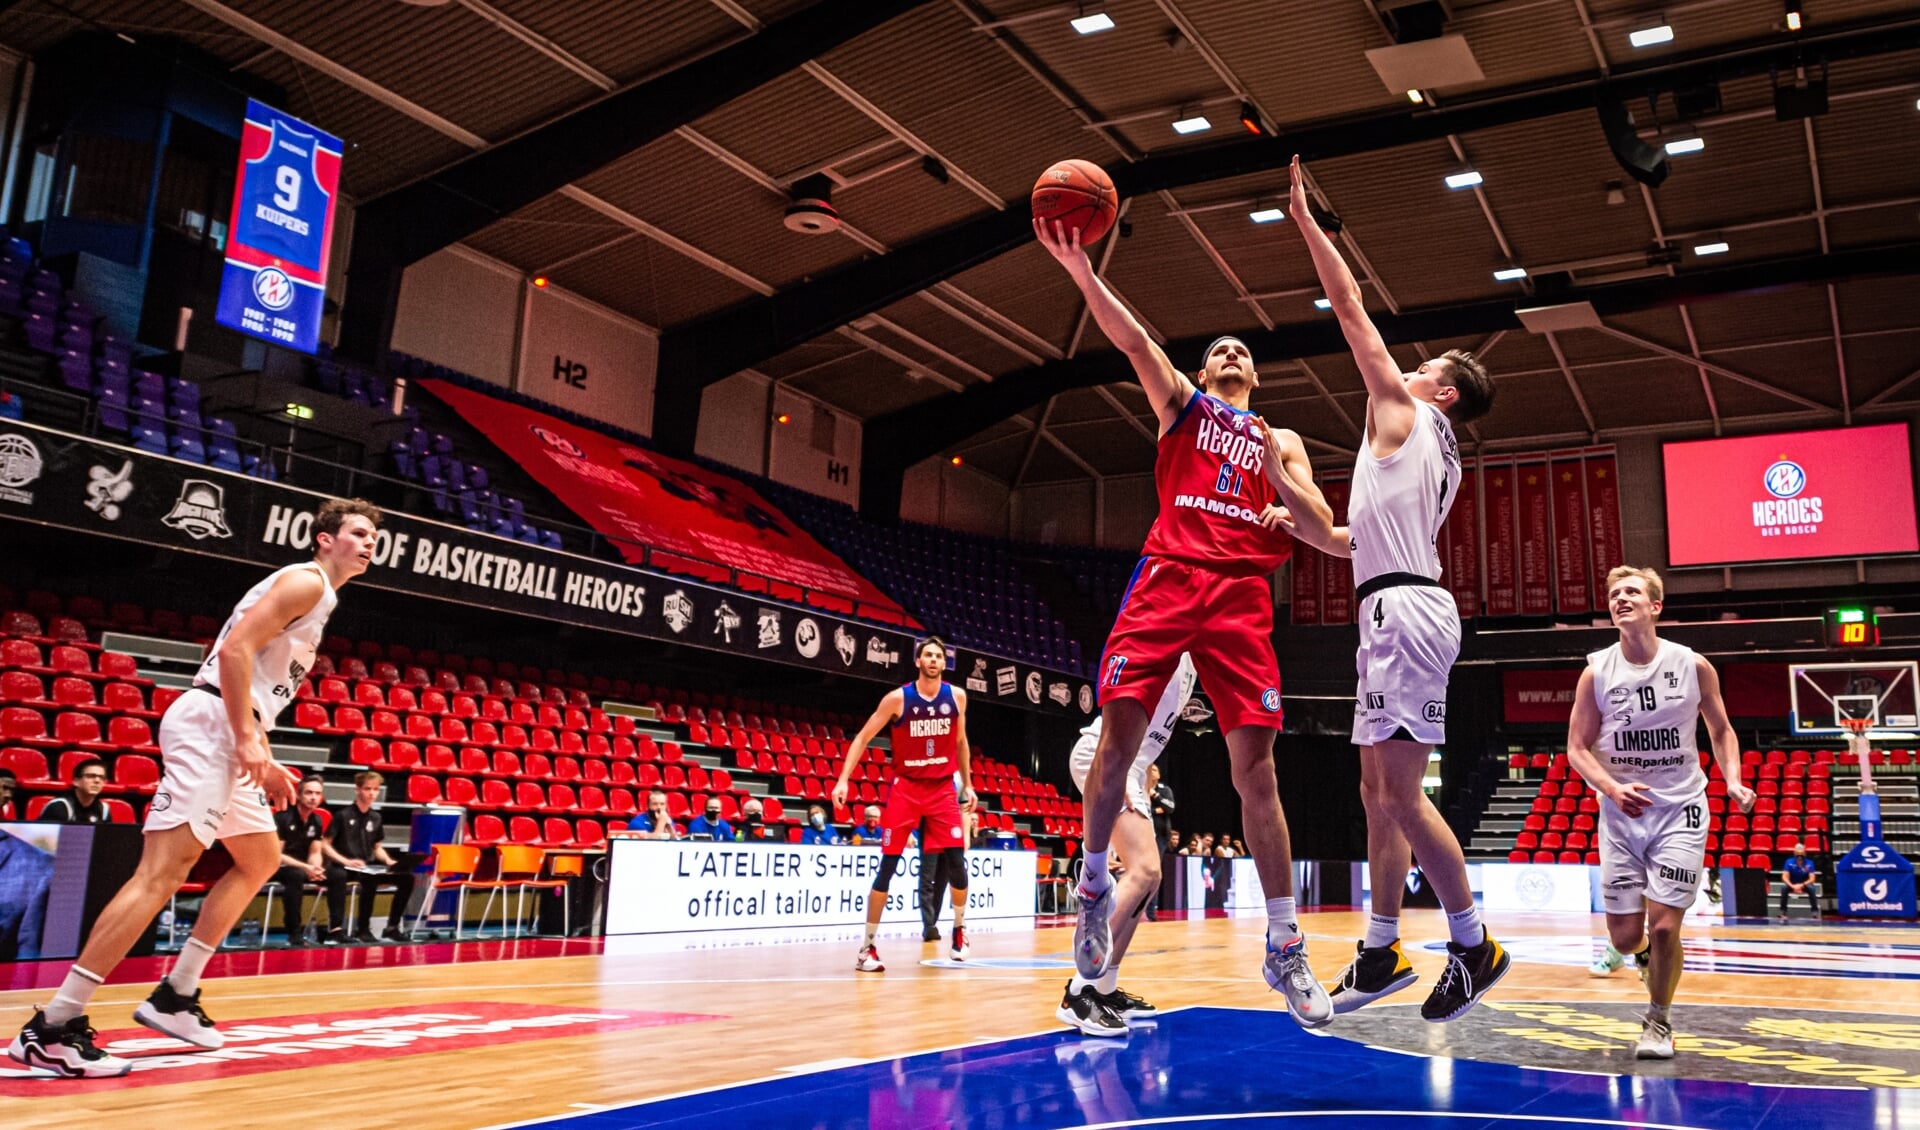 Heroes Den Bosch won in eigen huis met 97-56 van Basketbal Academie Limburg.